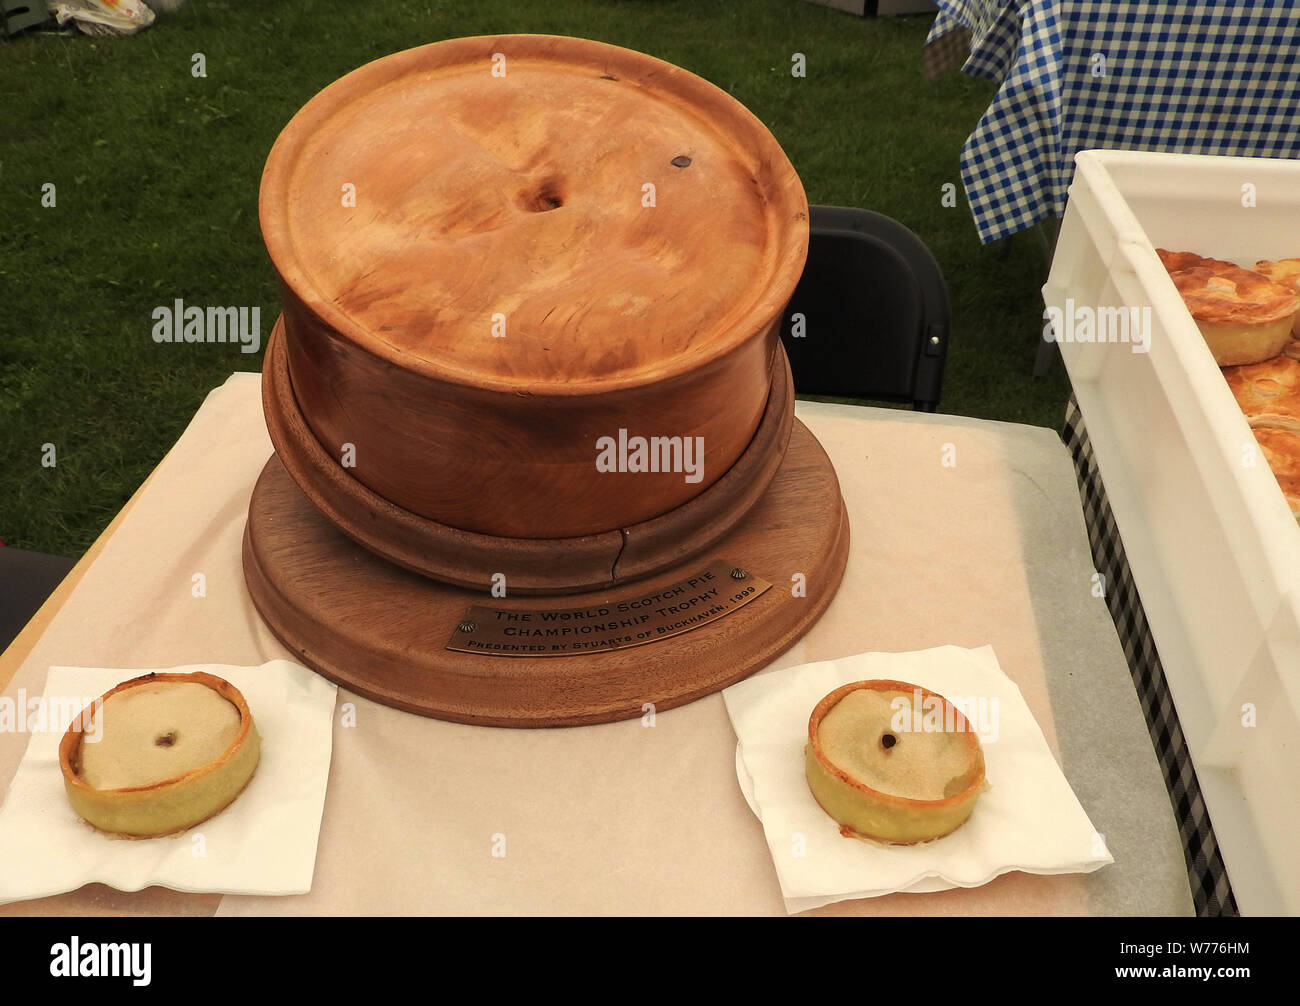 Scotch Pie mondial annuel le trophée de championnat avec Scotch réelle des tartes. (Aussi connu dans certaines régions comme un hachis, shell,poivré ou football pie.) exposé au salon de l'agriculture 2019 annuel Stranraer Banque D'Images